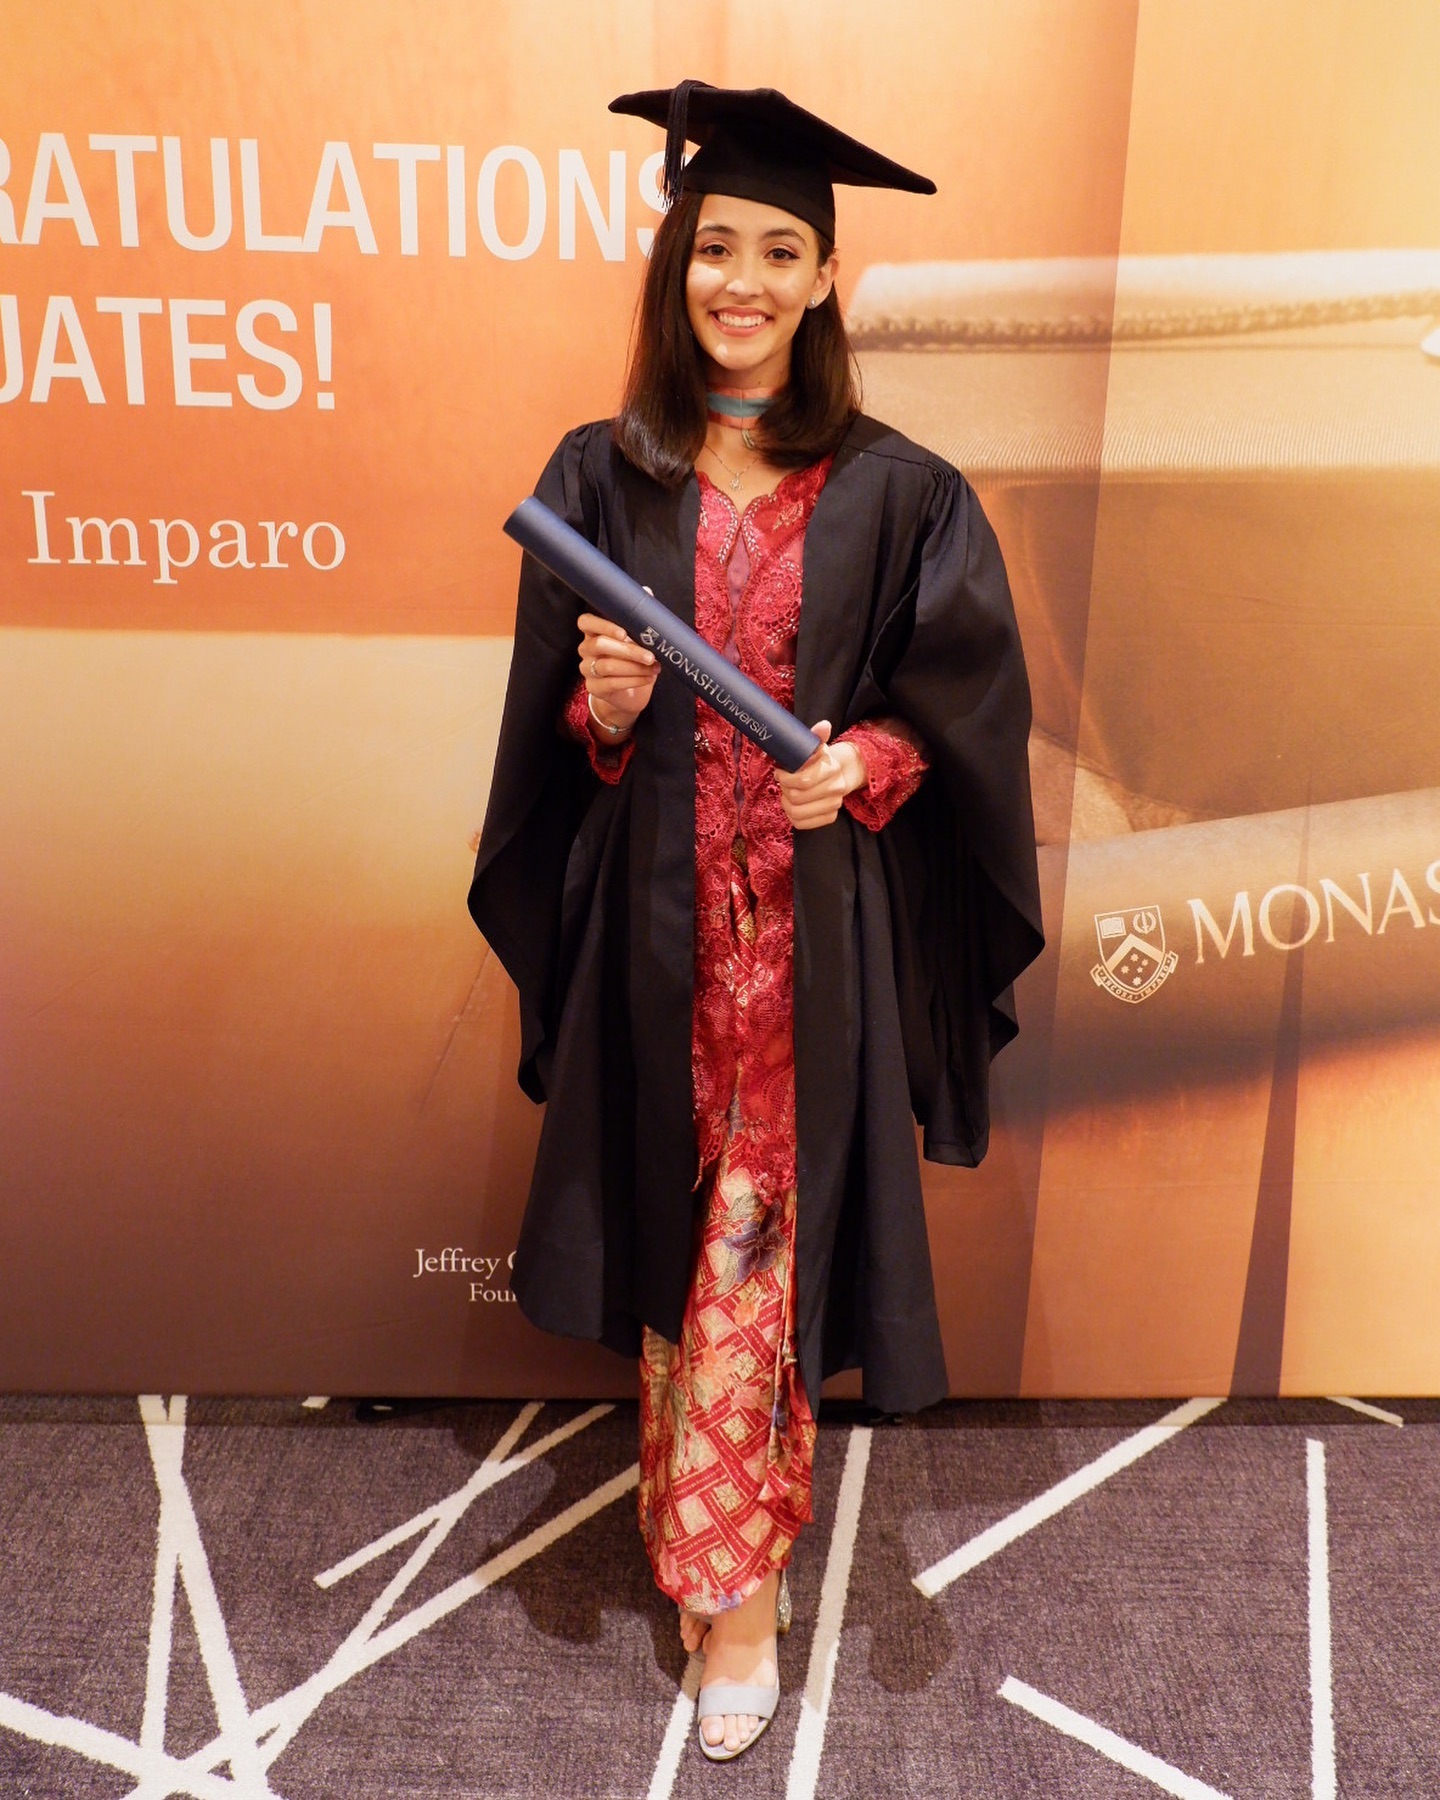 Farah graduating from university